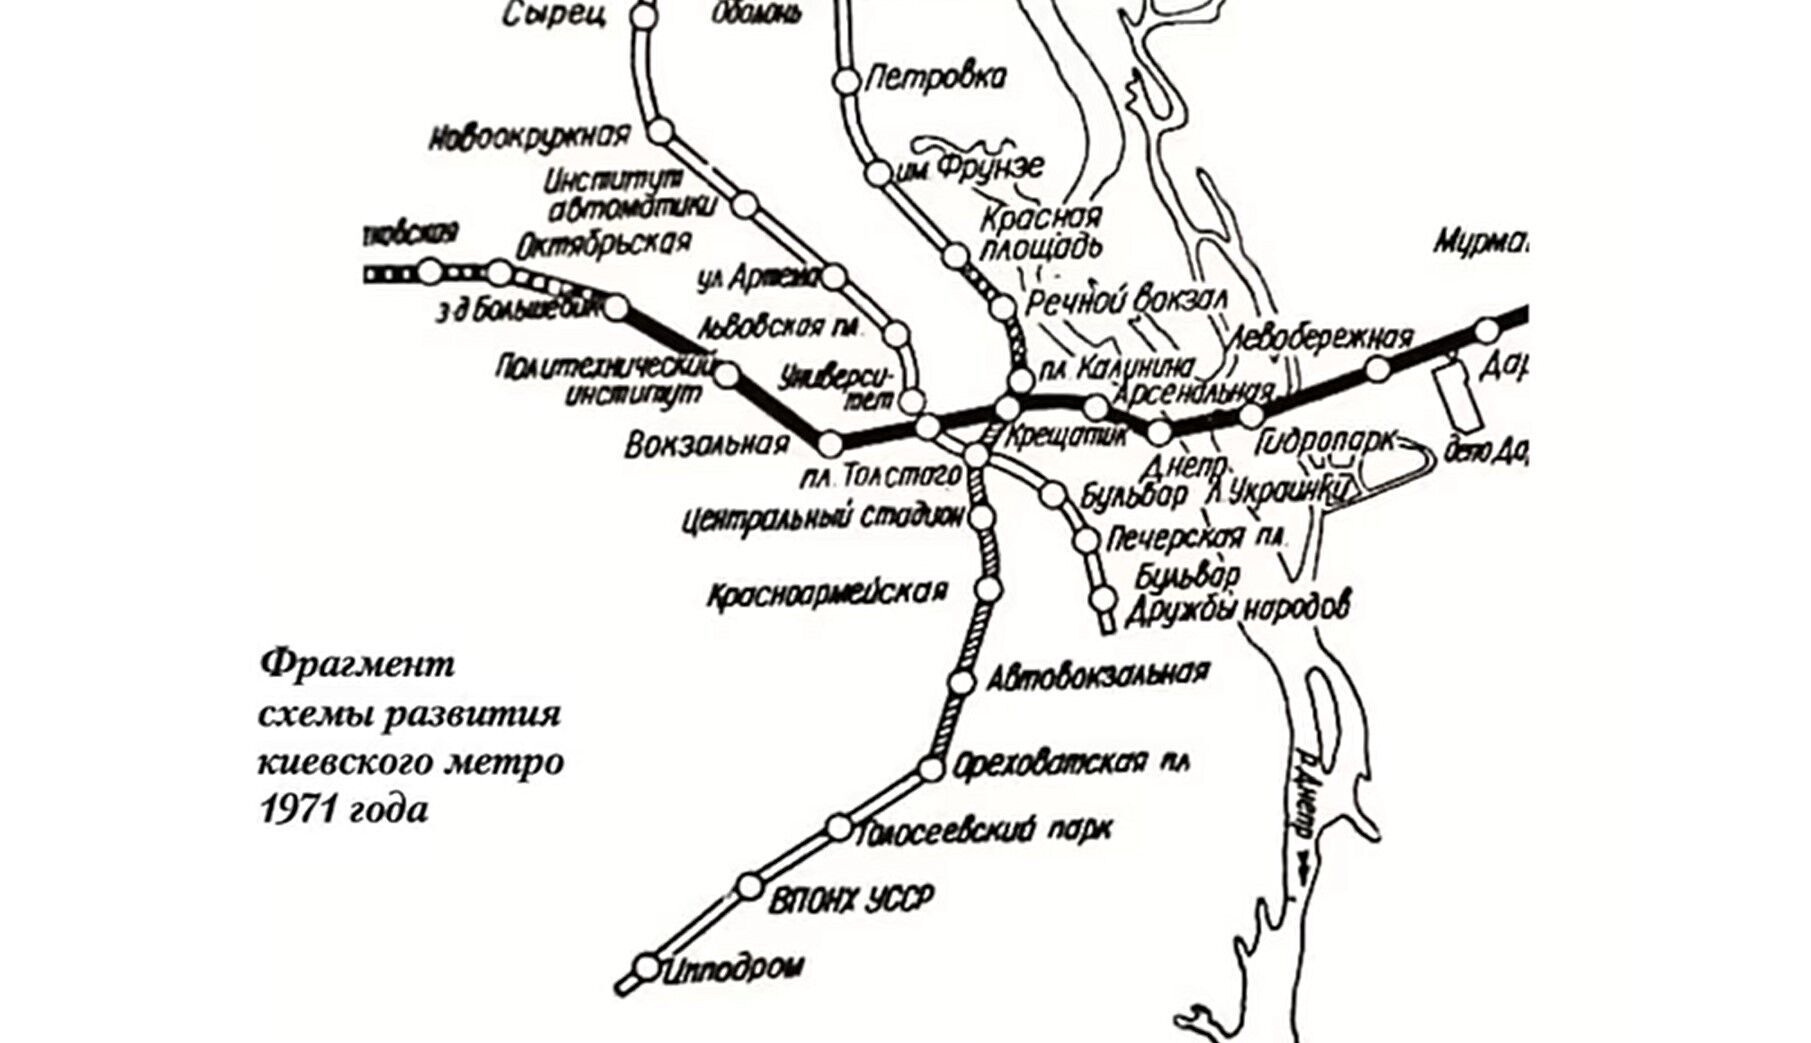 Проблемы начались еще в 1970-х: почему остановилась "синяя" ветка киевского метро и что будет дальше. Видео